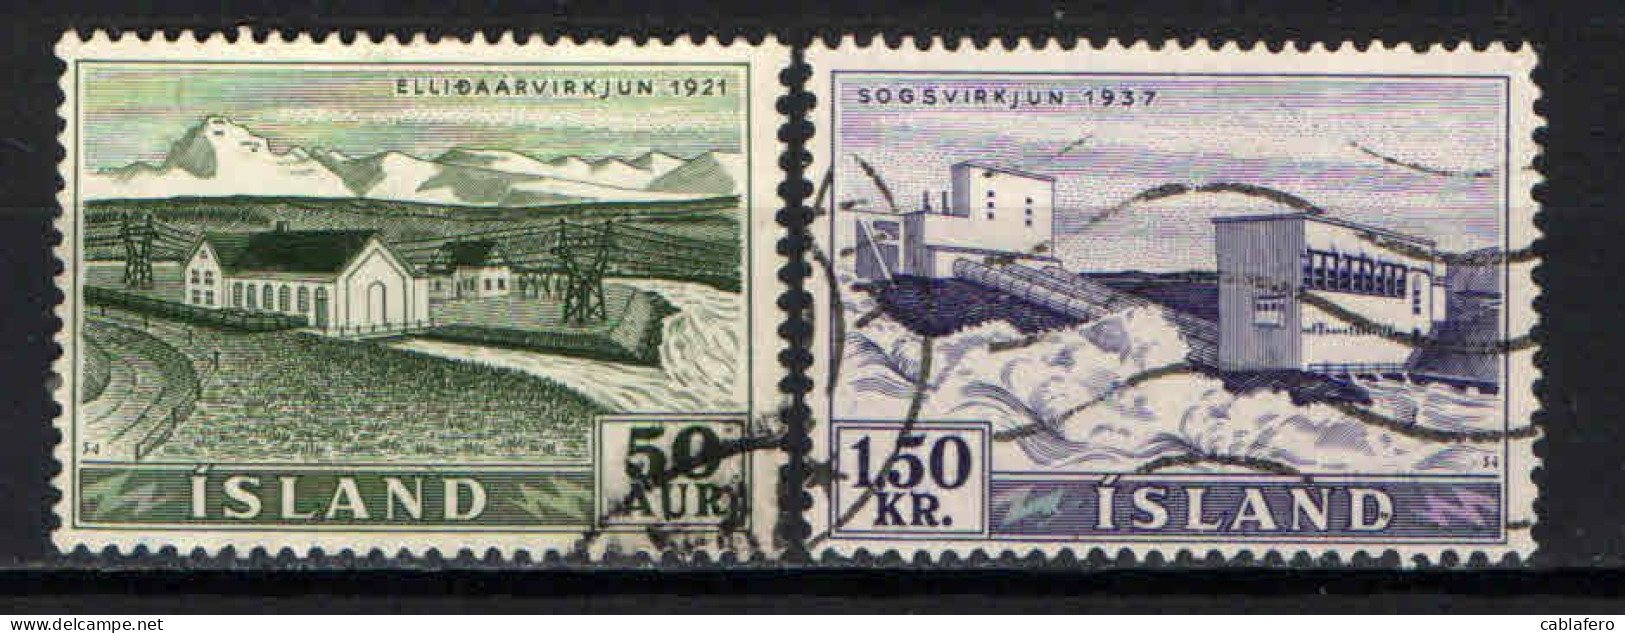 ISLANDA - 1956 - IMPIANTI IDROELETTRICI: CENTRALE DI ELLIDAAR E DEL SOG - USATI - Used Stamps